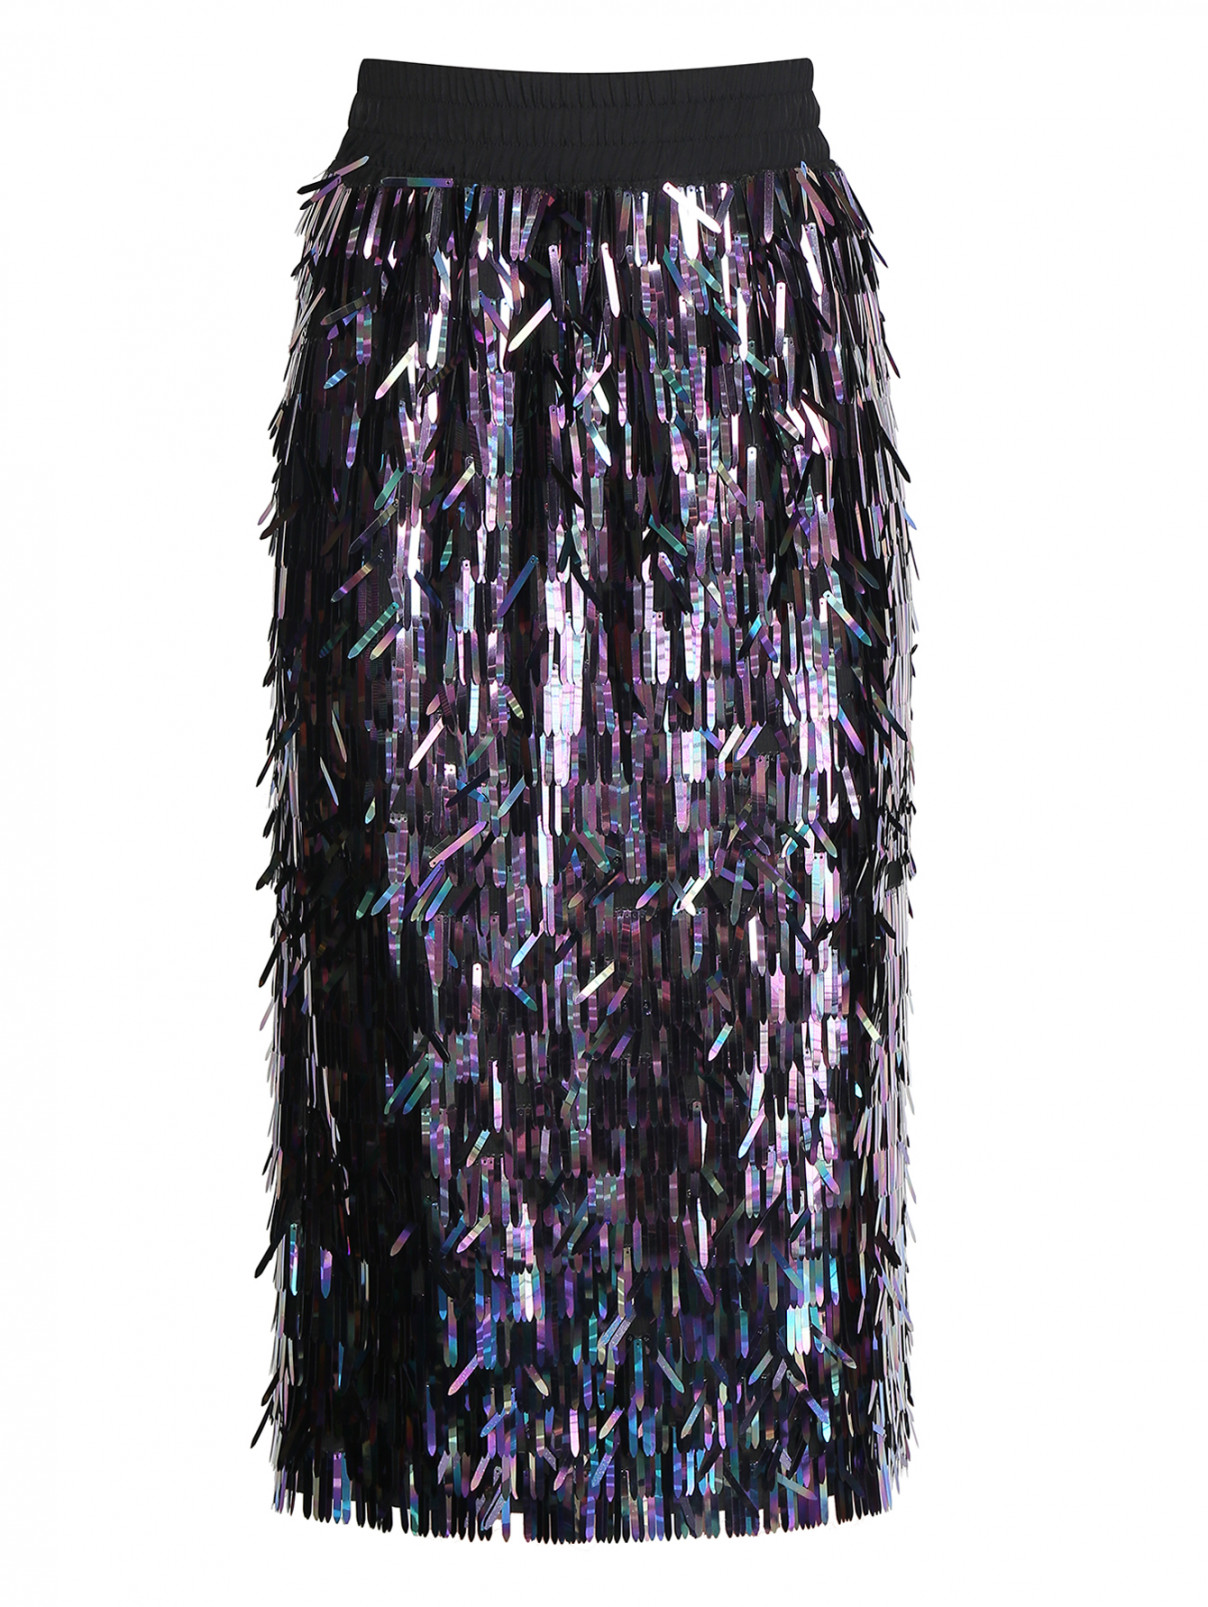 Юбка с пайетками на резинке Nolo  –  Общий вид  – Цвет:  Фиолетовый